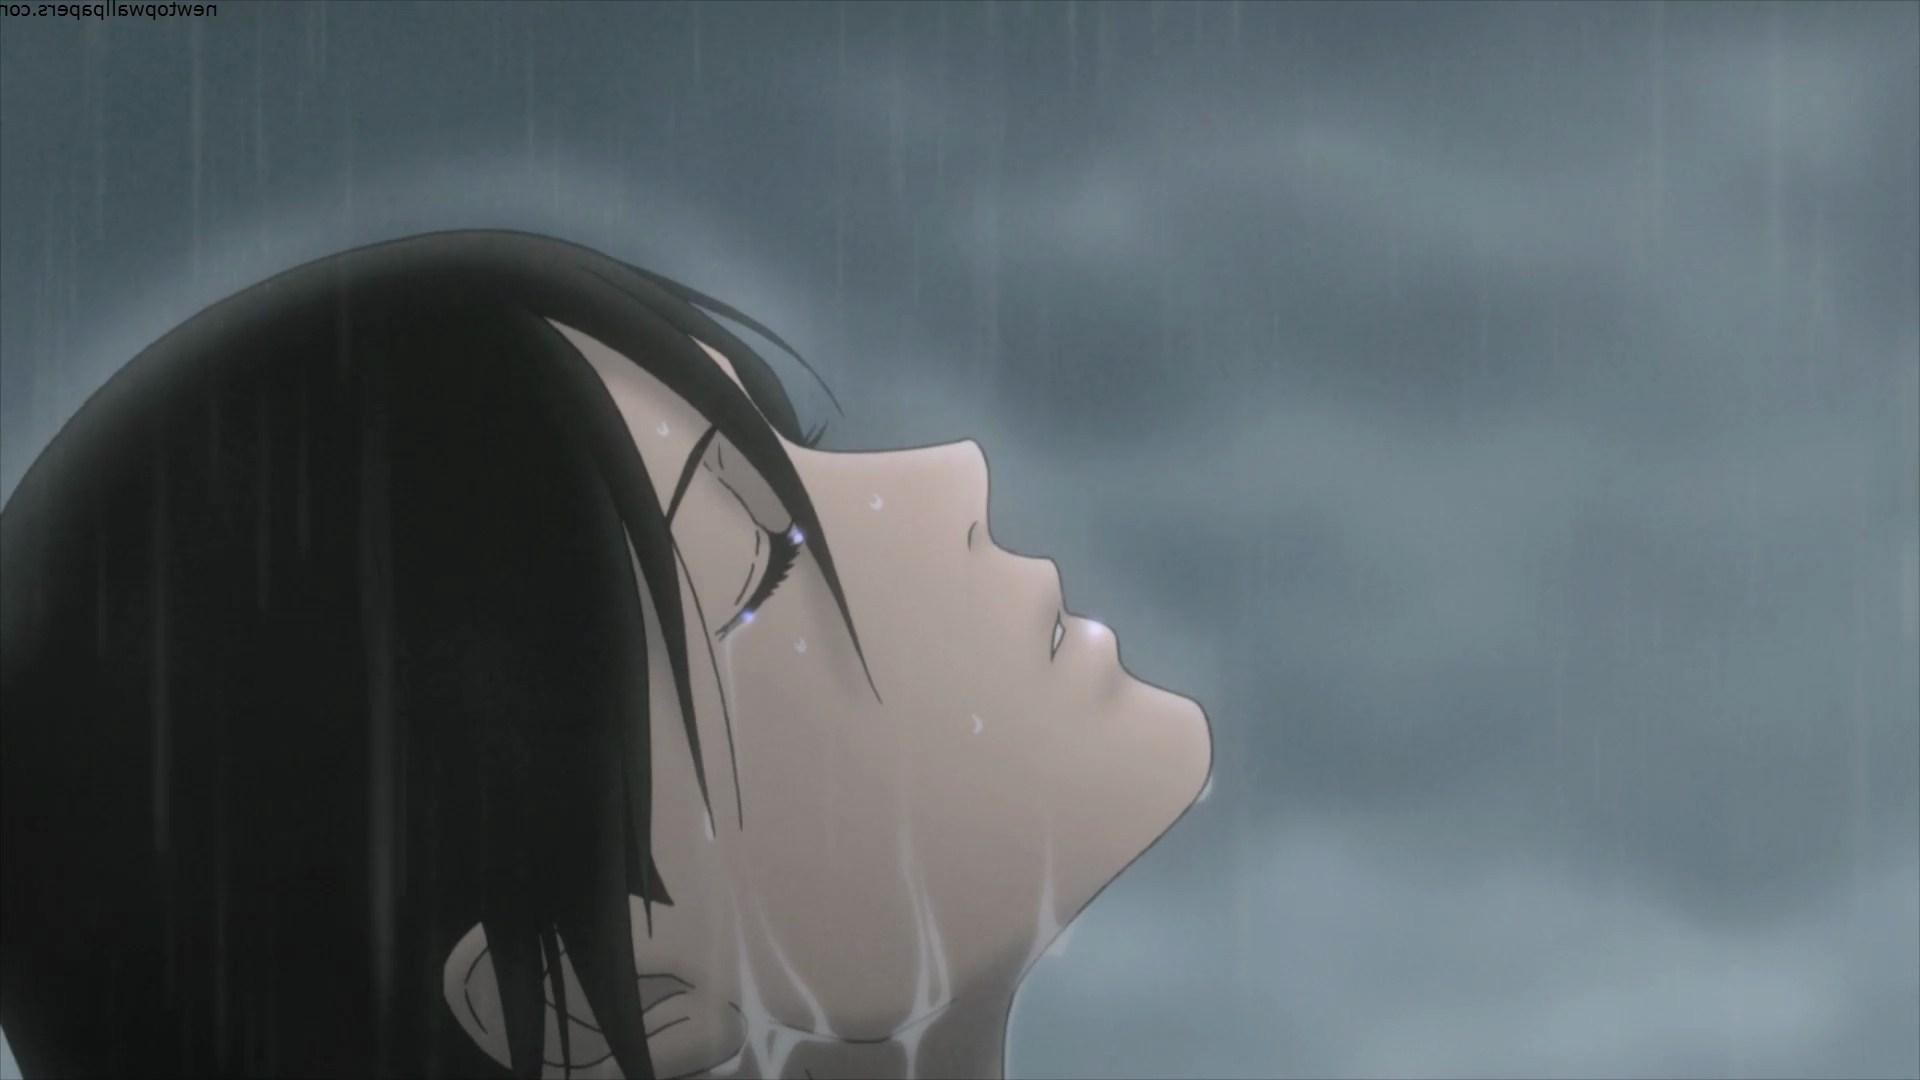 Drawn Rain Alone Boy 5 Download Source Anime Boy Hd, HD